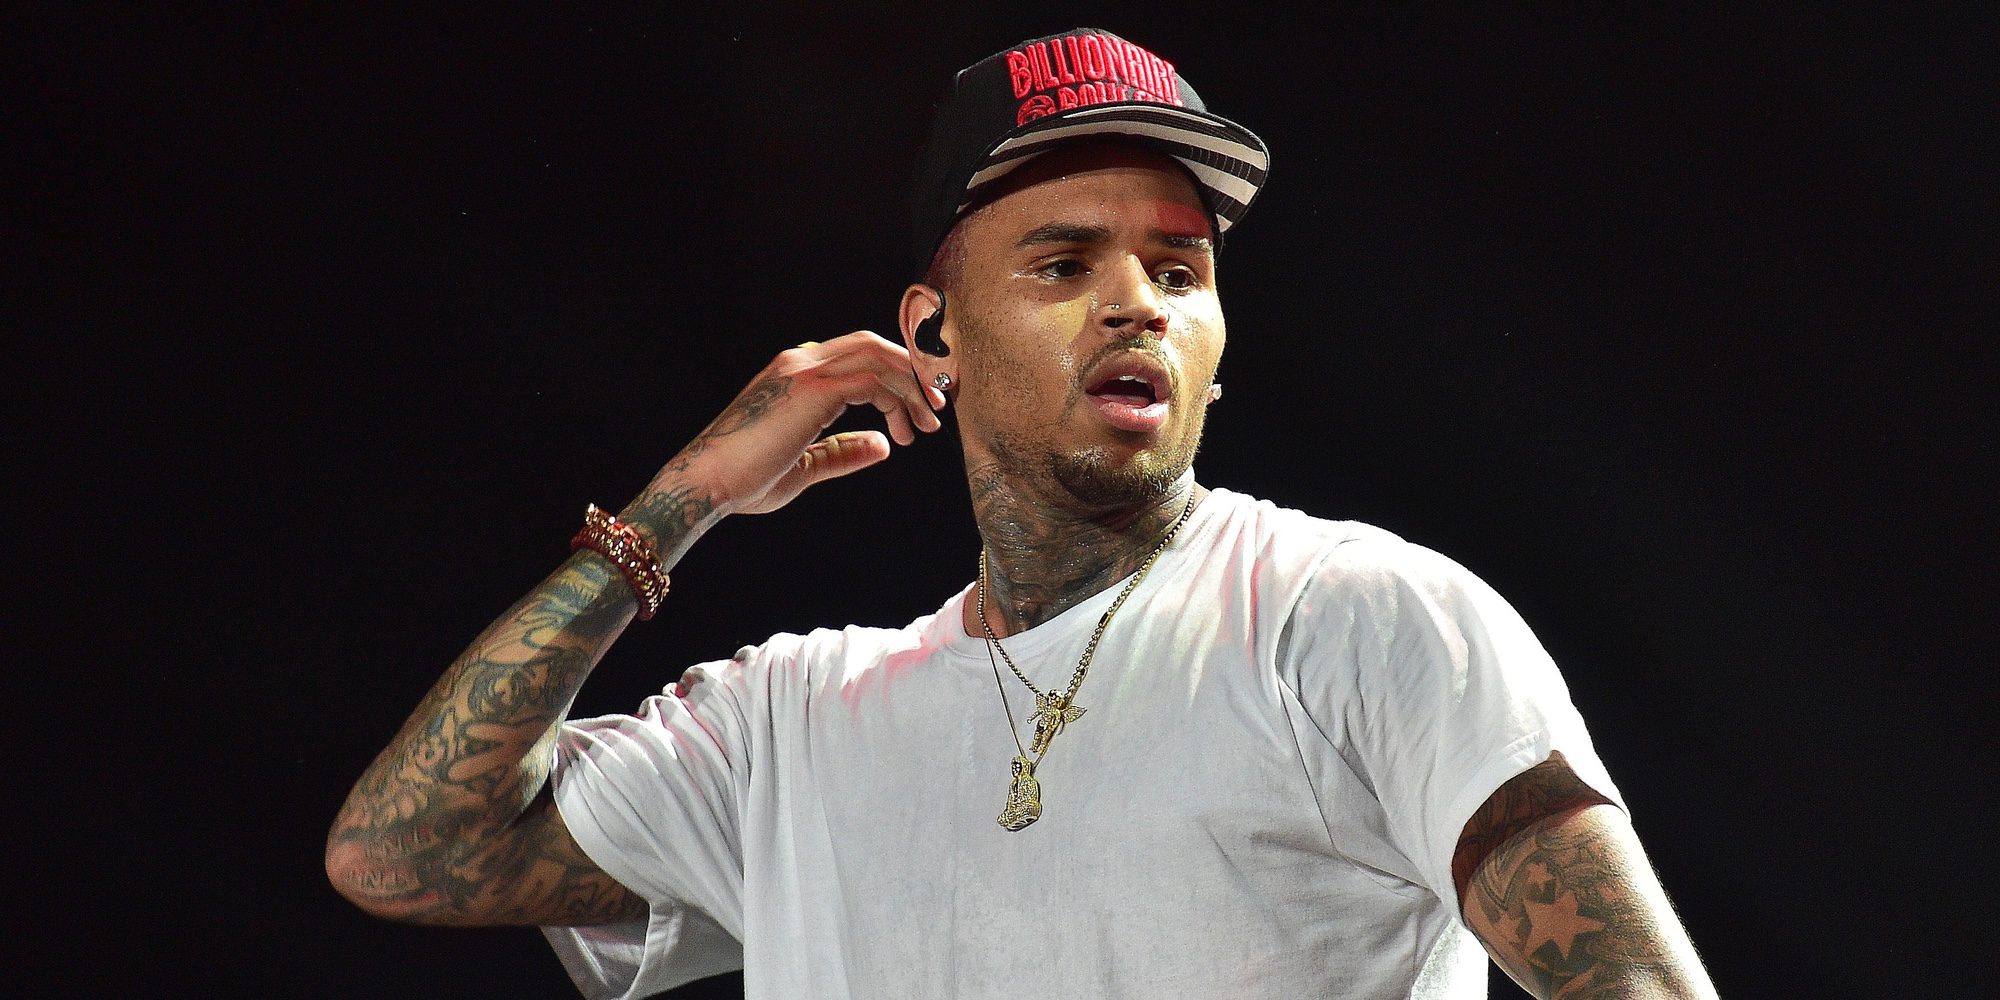 Chris Brown, sobre su relación con Rihanna: "Perdió la confianza en mí totalmente"